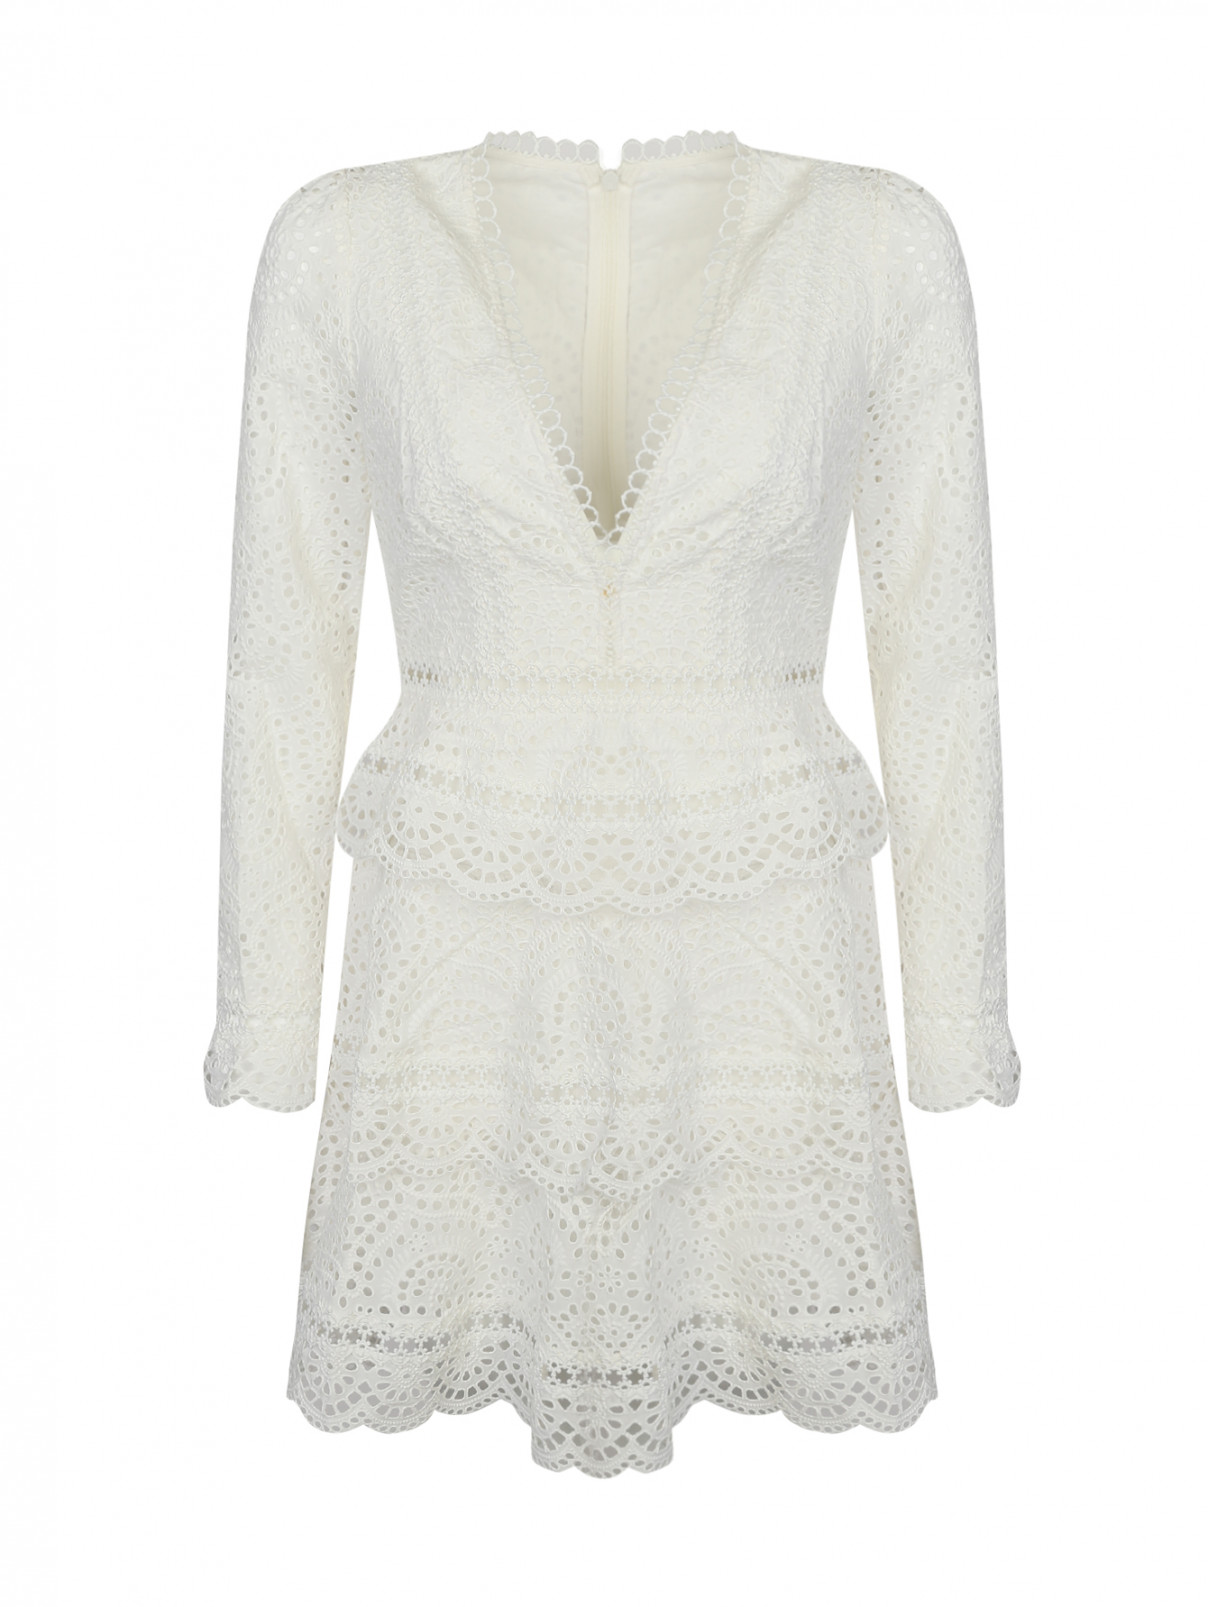 Платье кружевное, из хлопка Zimmermann  –  Общий вид  – Цвет:  Белый